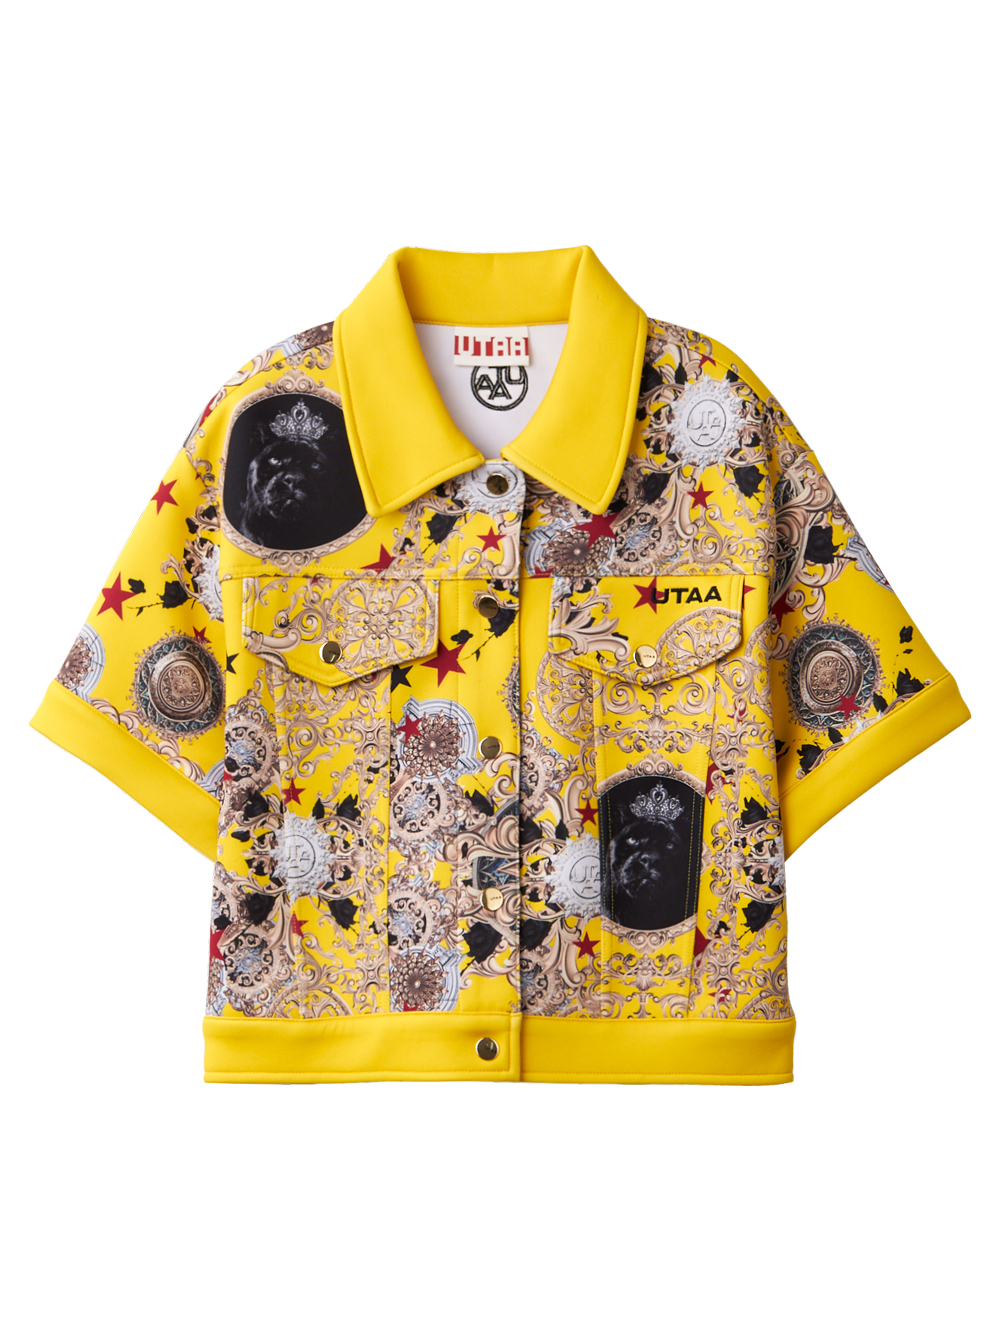 UTAA Crown Panther Baroque Jacket : Womens&#039;s Yellow (UC2STF420YE)